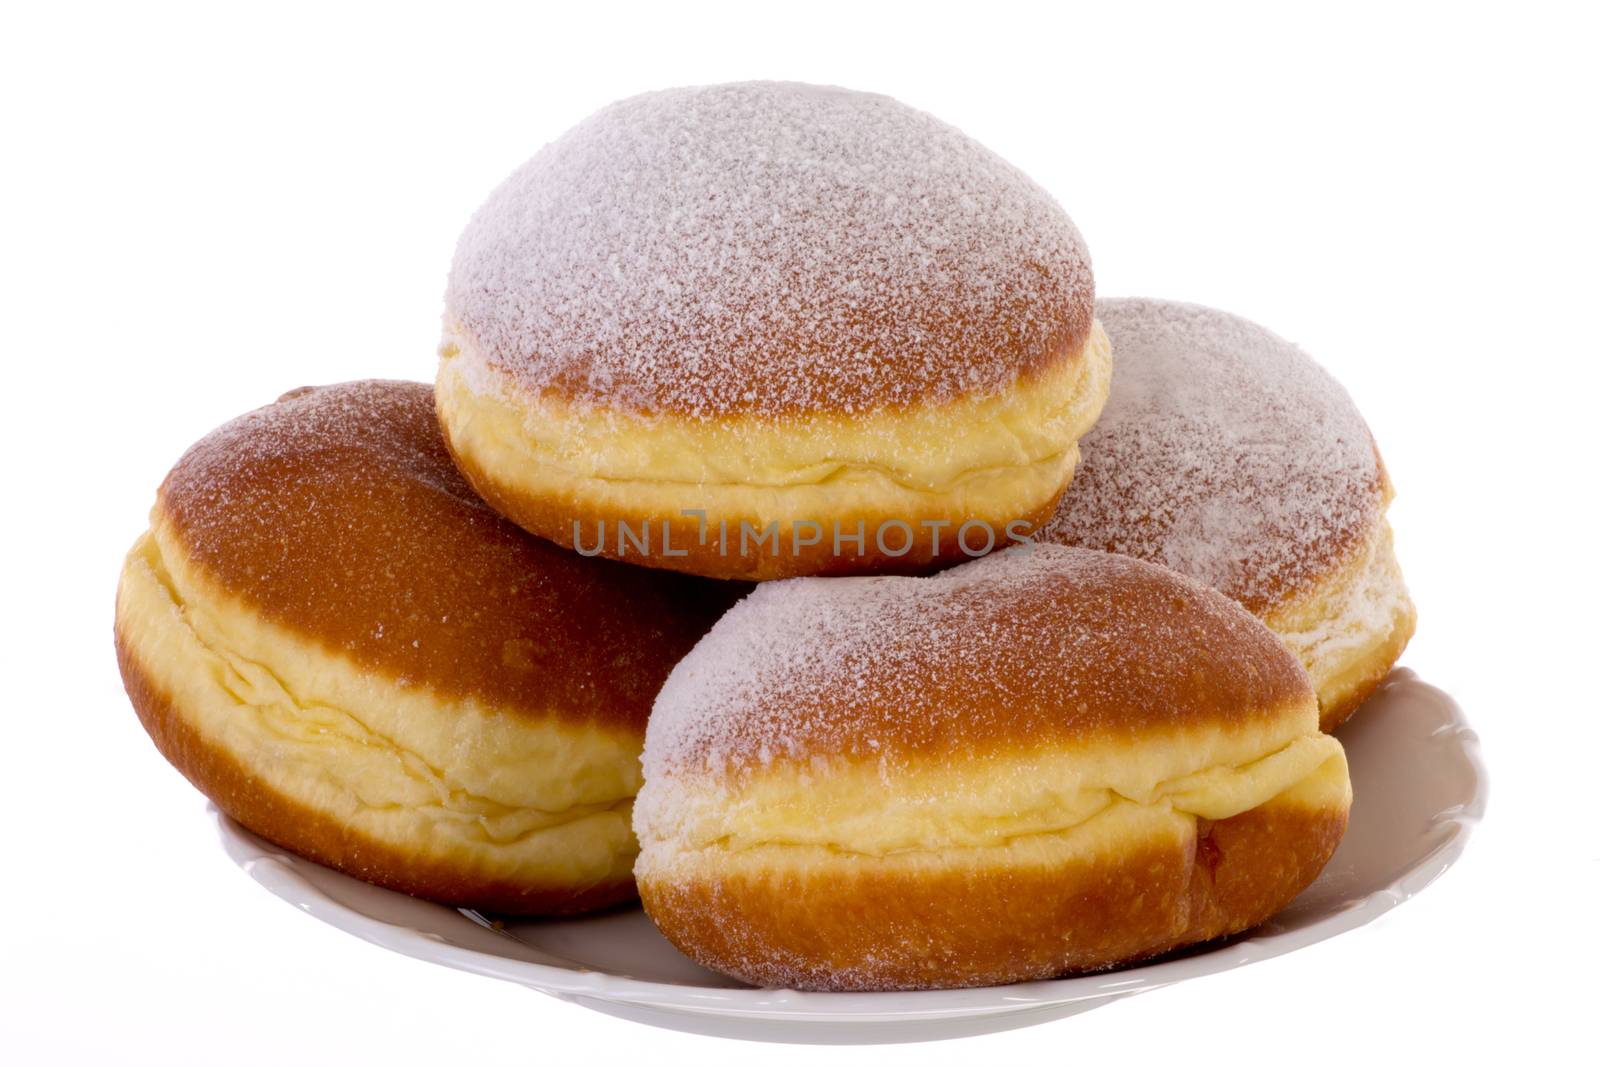 Krapfen Berliner Pfannkuchen Bismarck Donuts by gwolters